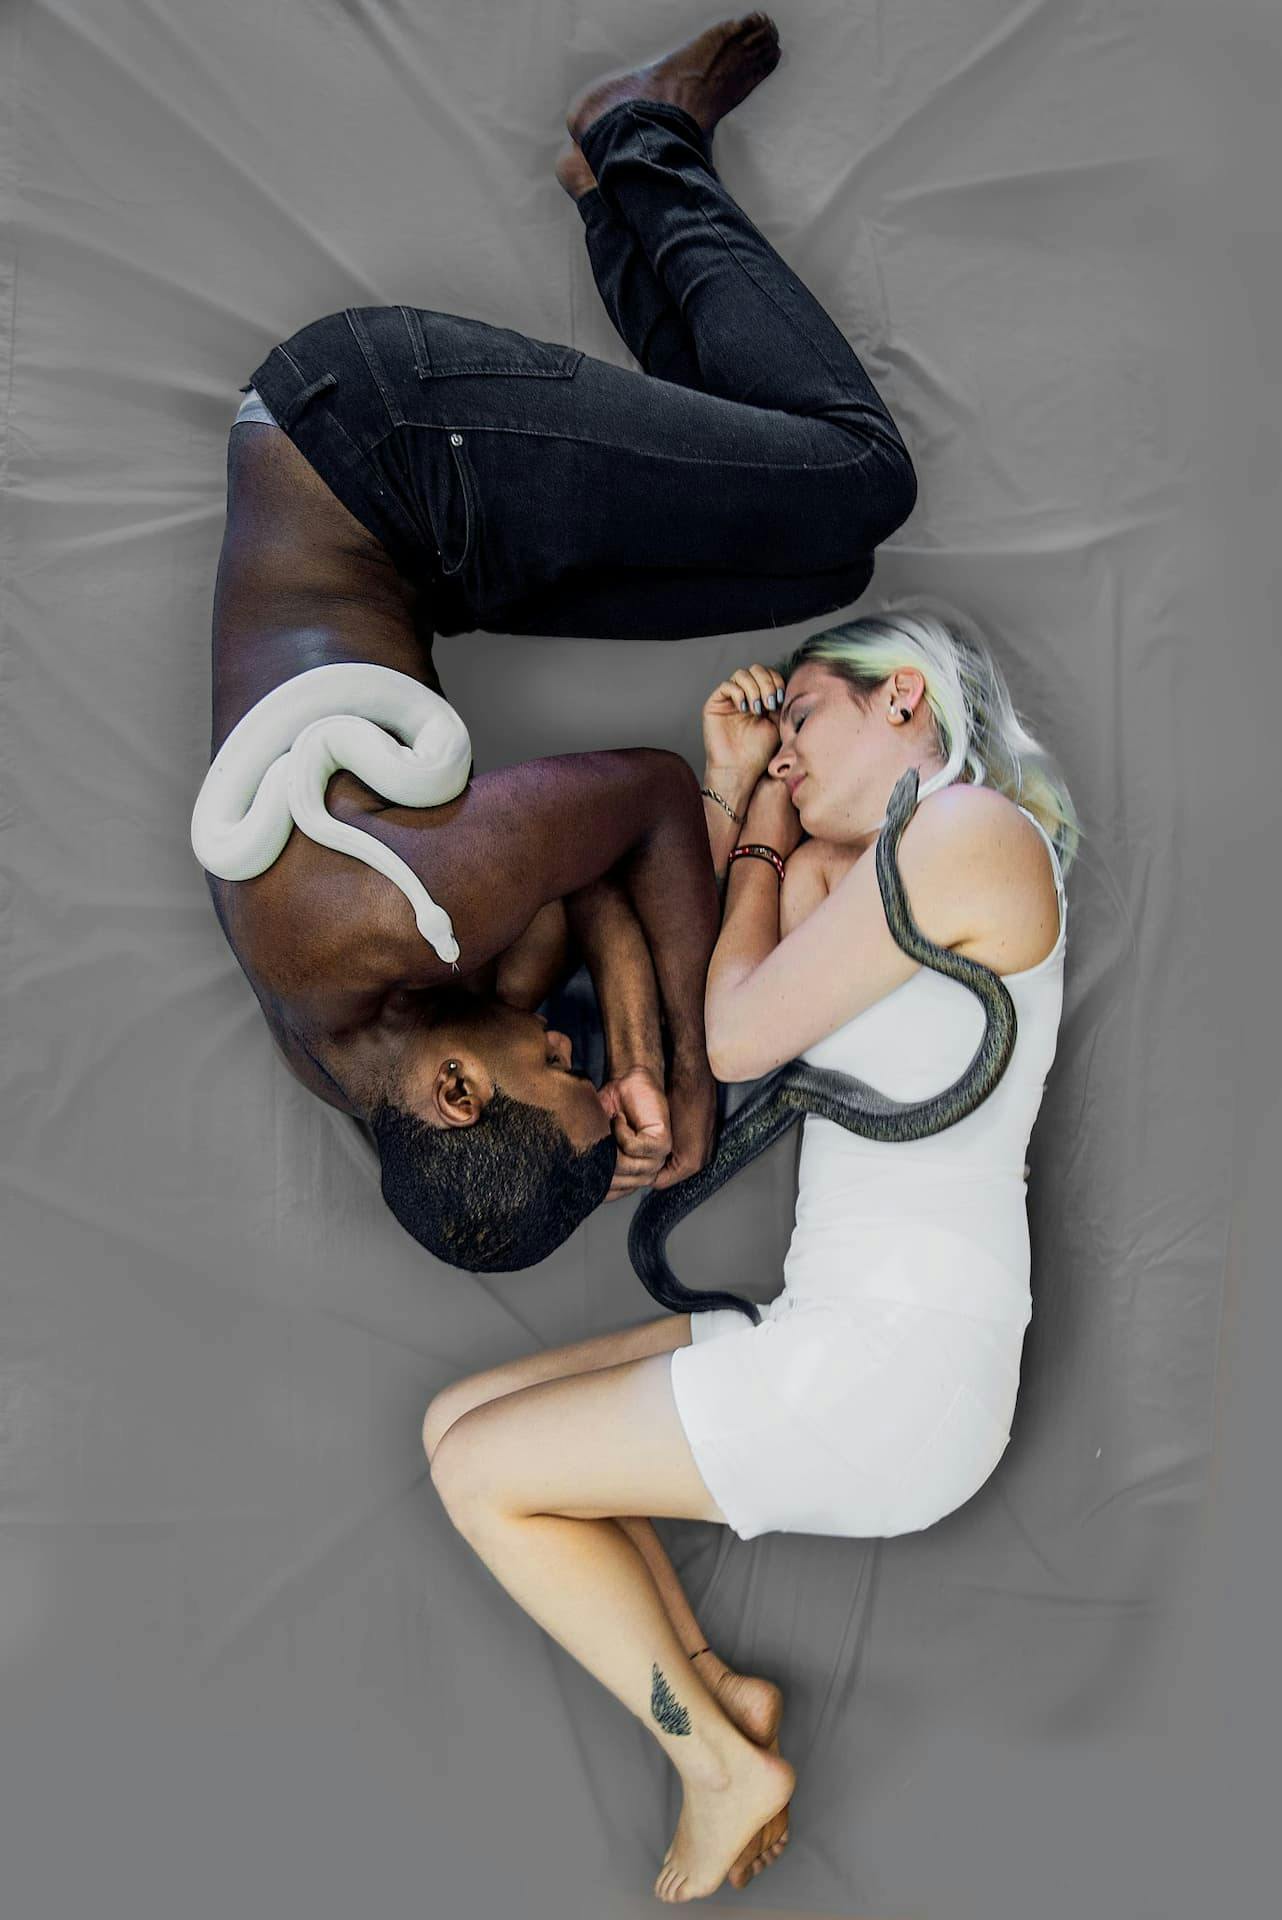 bianco nero opposti contrario serpente albino abbraccio